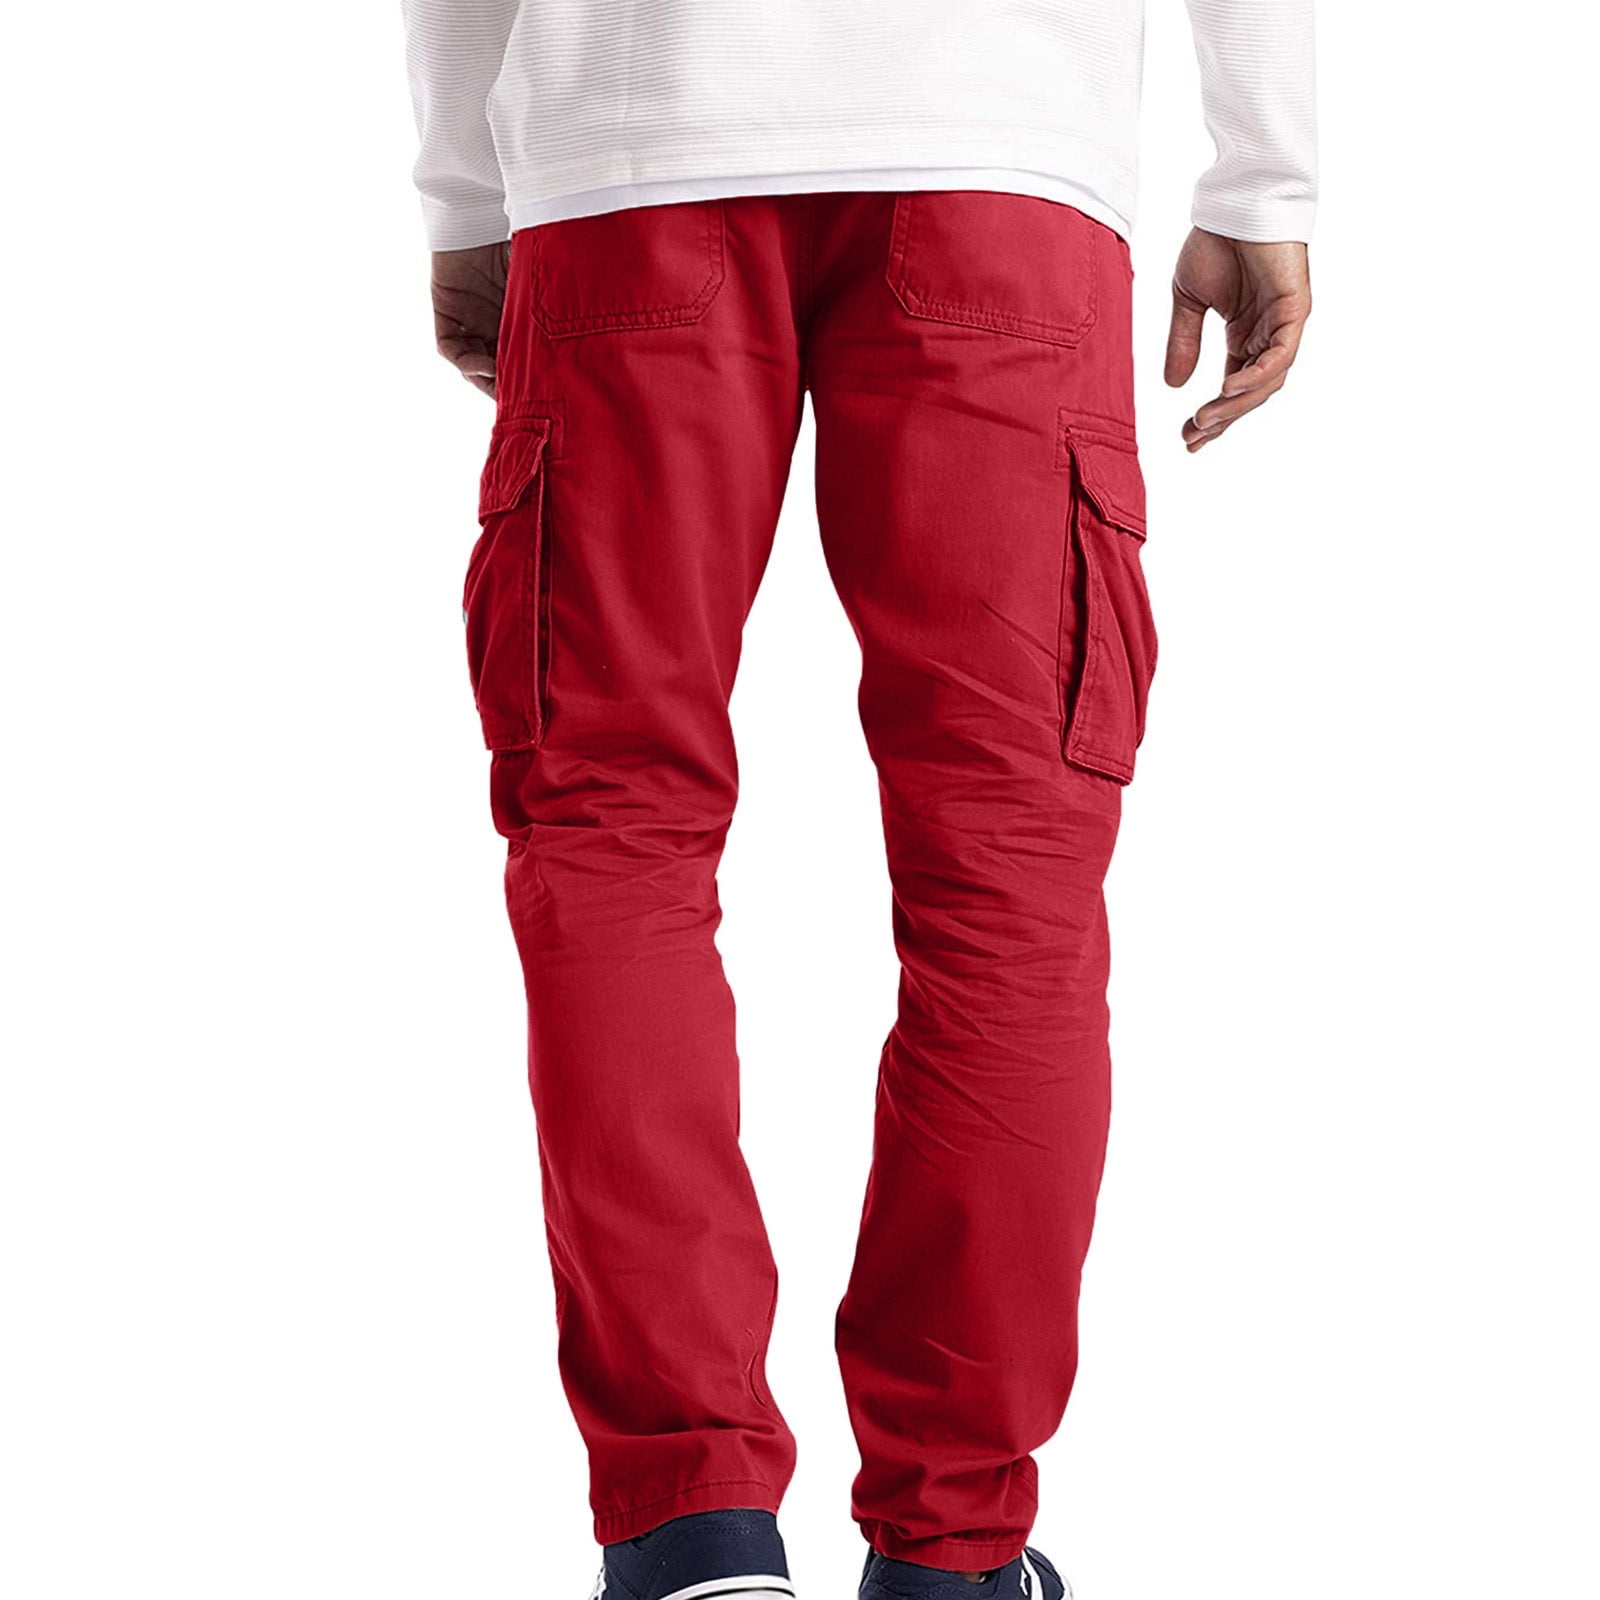 H&M Cargo Pants Slim fit | Slim fit cargo pants, Mens cargo trousers, Pants  outfit men